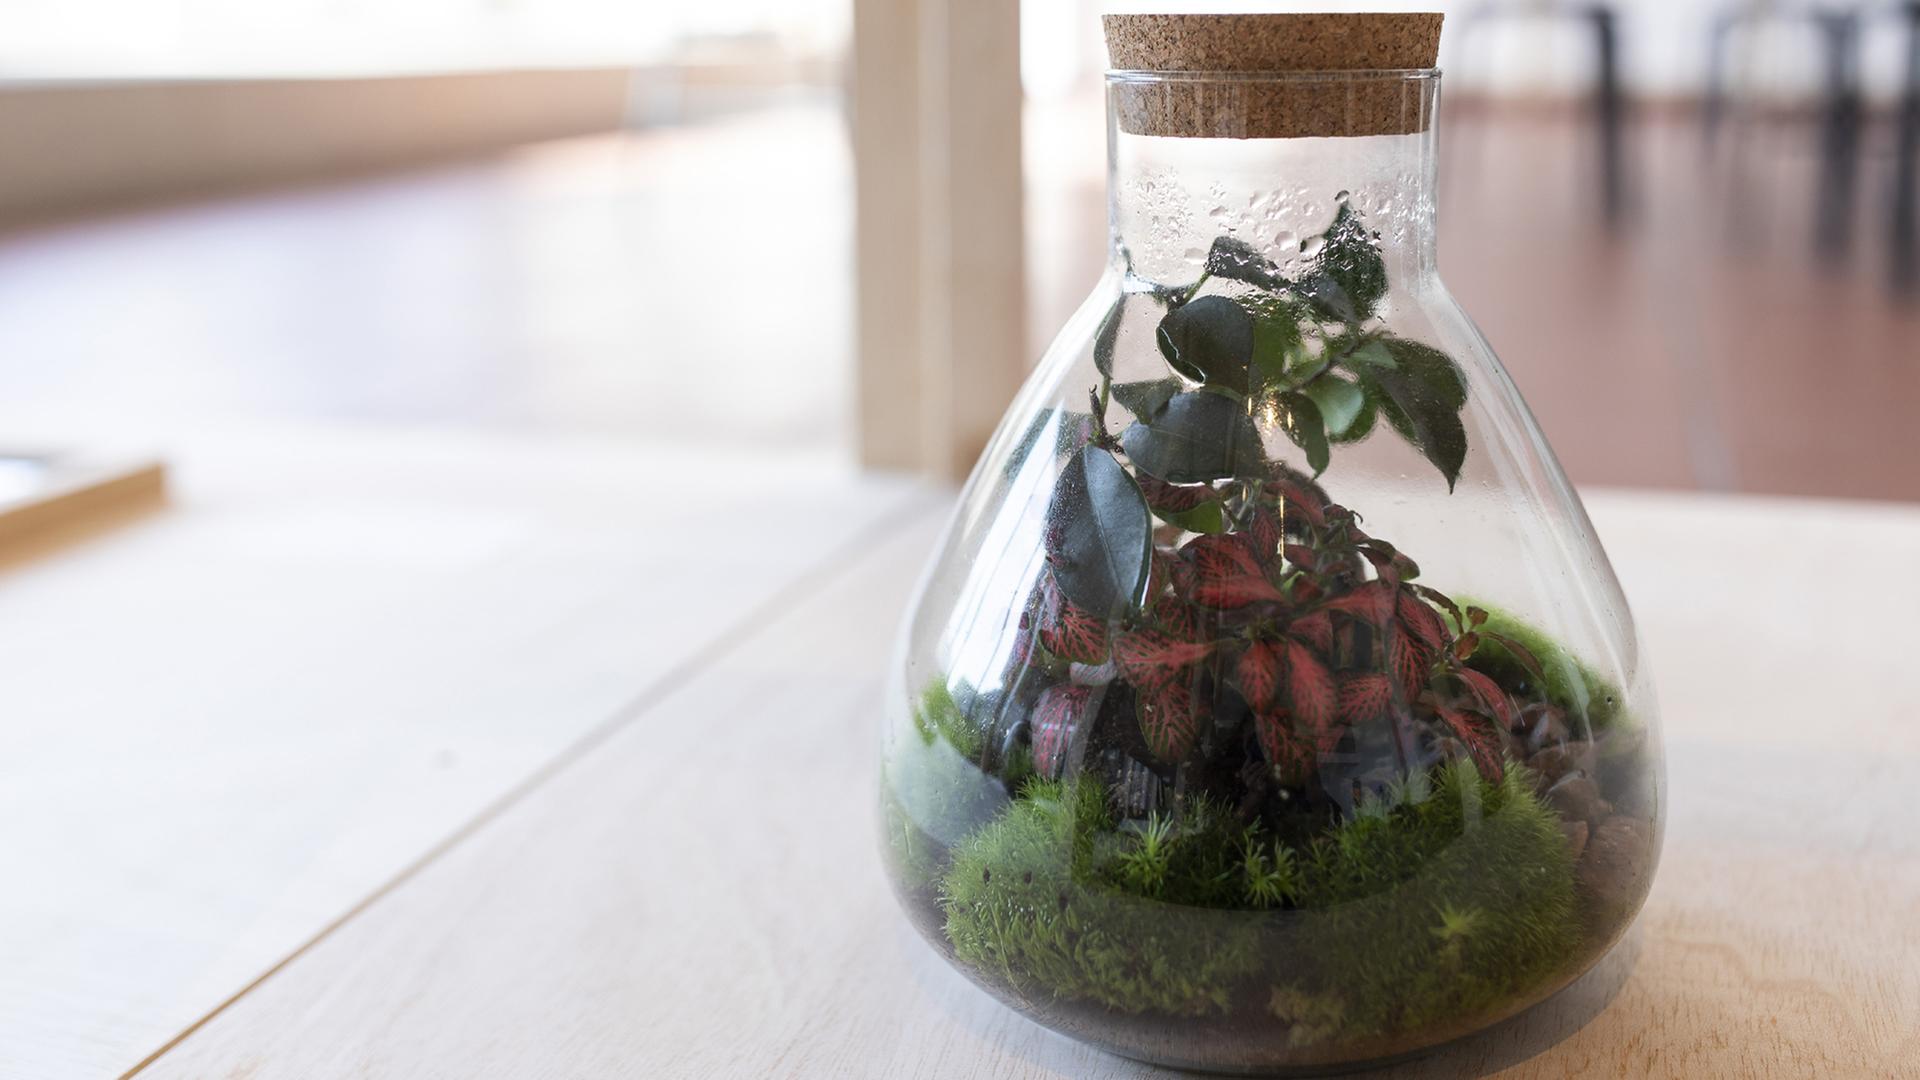 Pflanzen in einem Glasgefäß - Installationsansicht der Ausstellung "Grüne Moderne. Die neue Sicht auf Pflanzen"
Museum Ludwig, Köln 2022